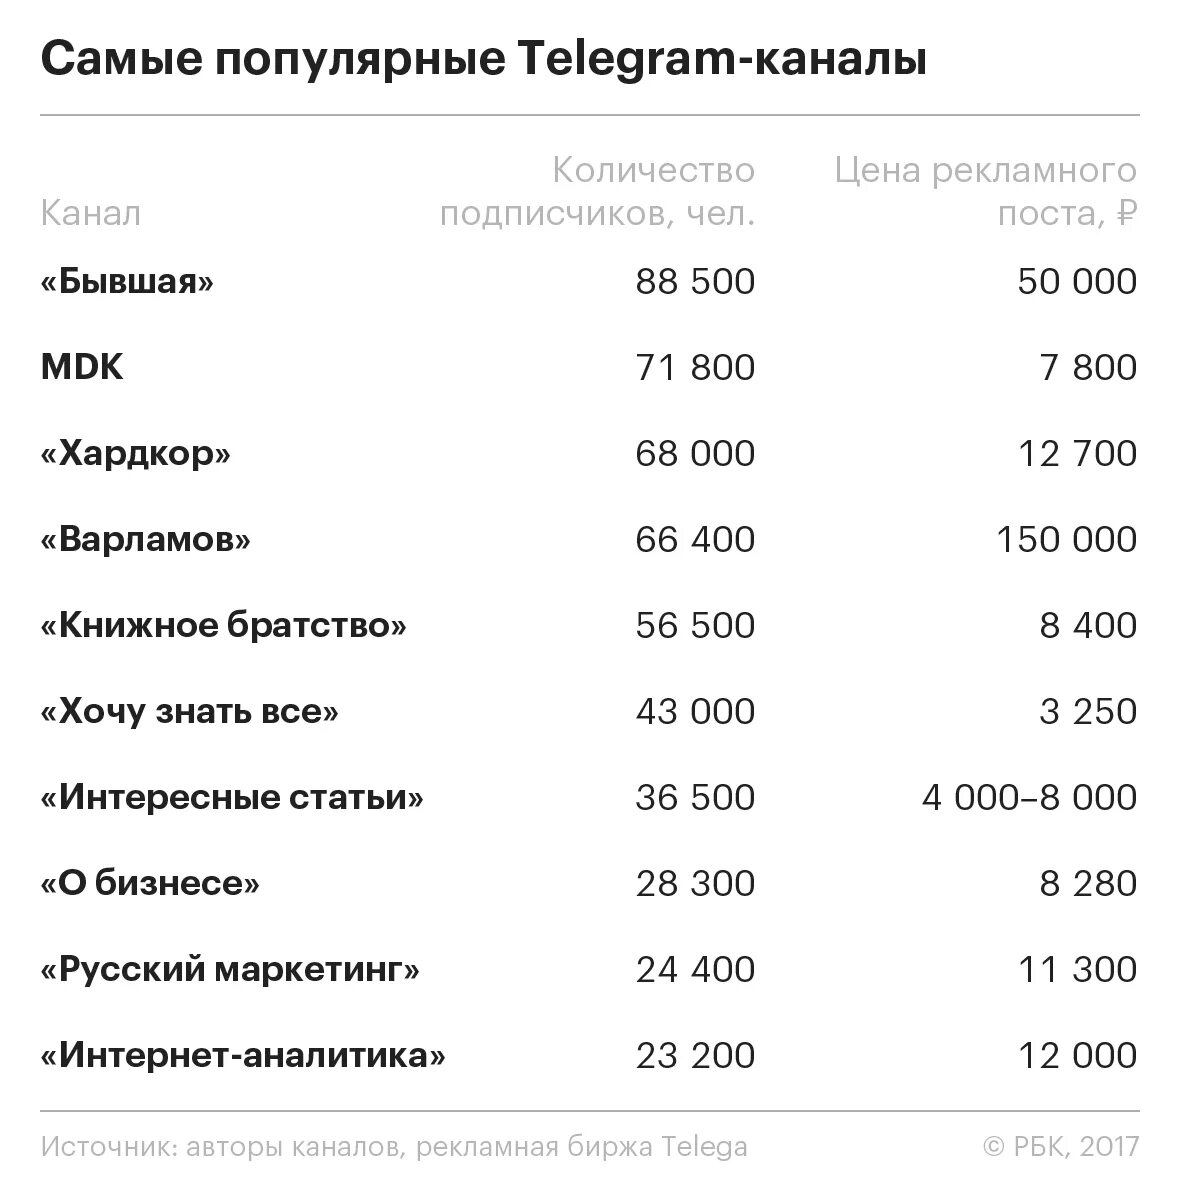 Оценка тг канала. Самый популярный Telegram канал. Популярные телеграм каналы. Самые популярные телеграм каналы. Популярныемканалы телеграм.